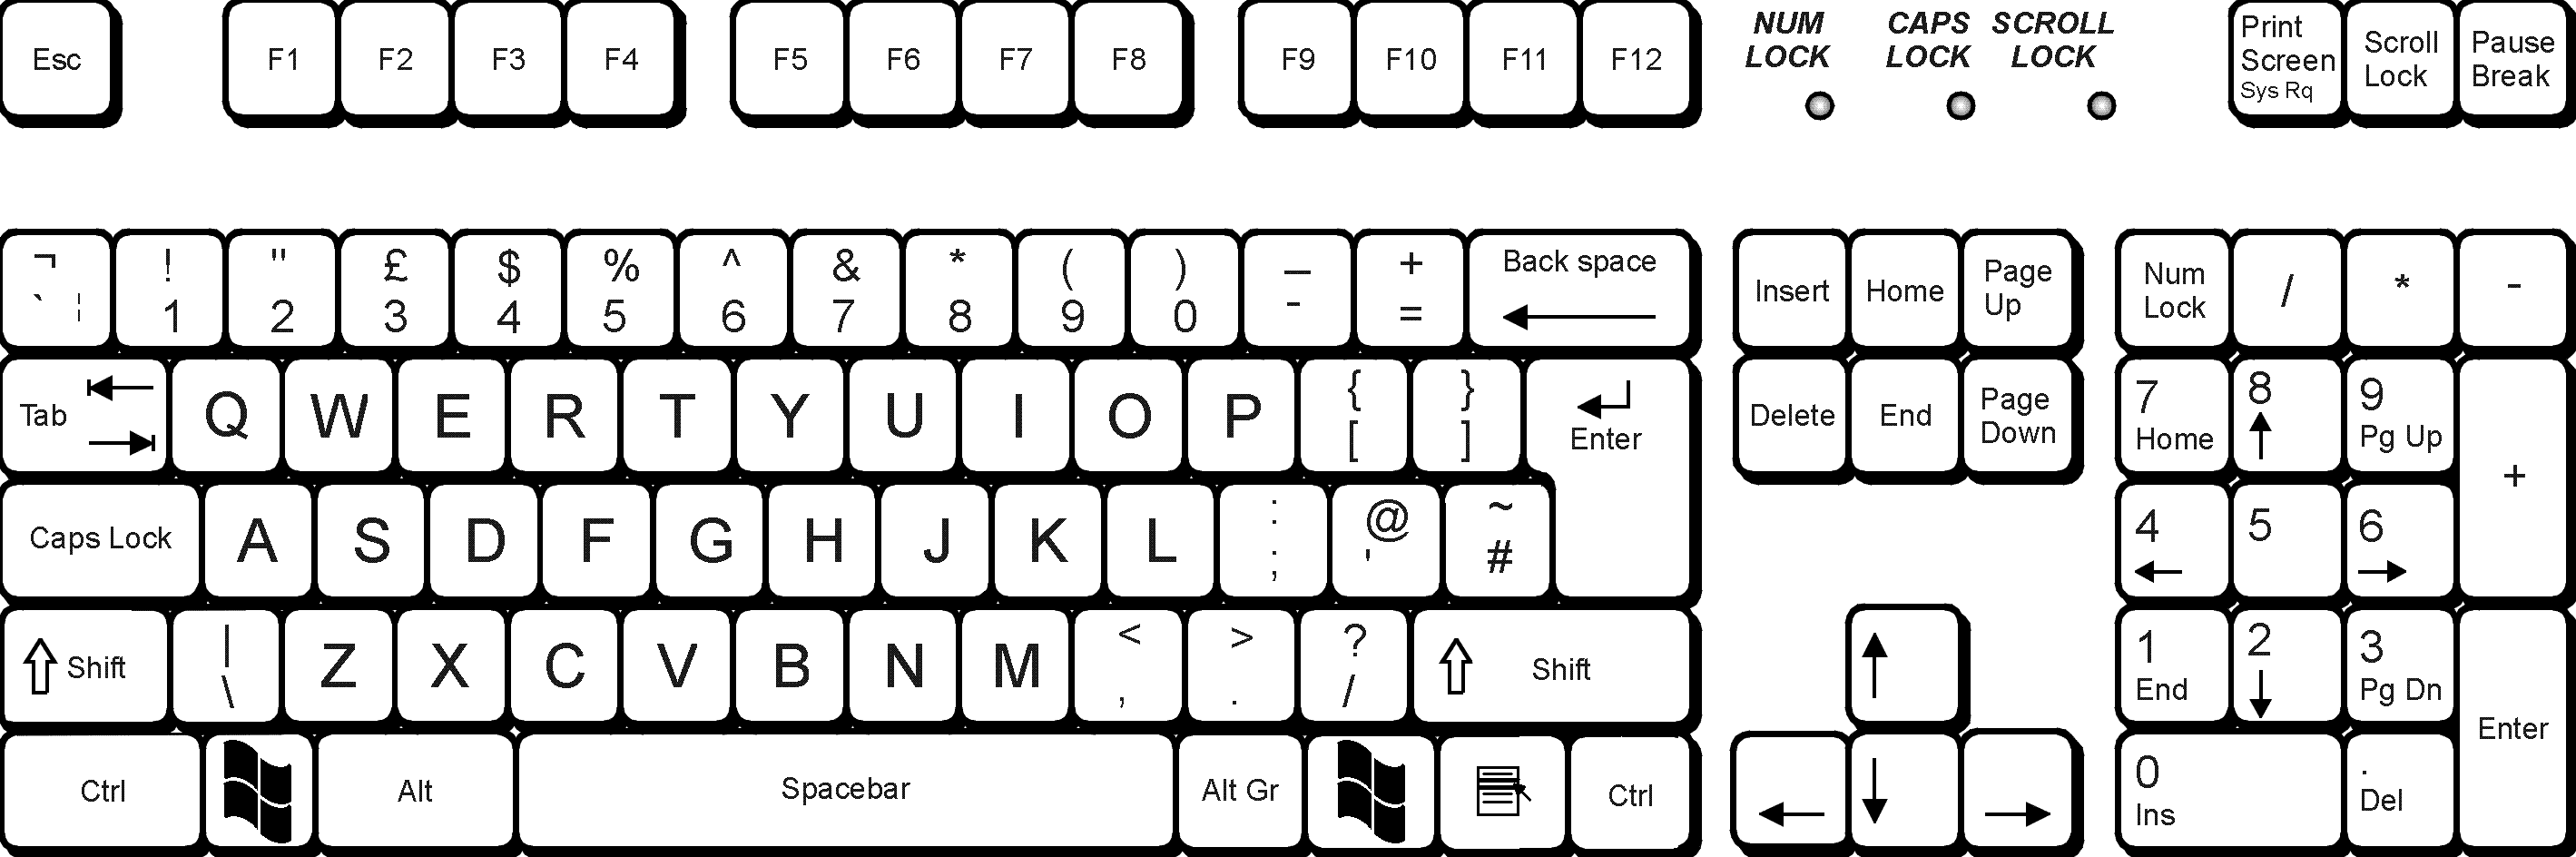 iso standard keyboard layout